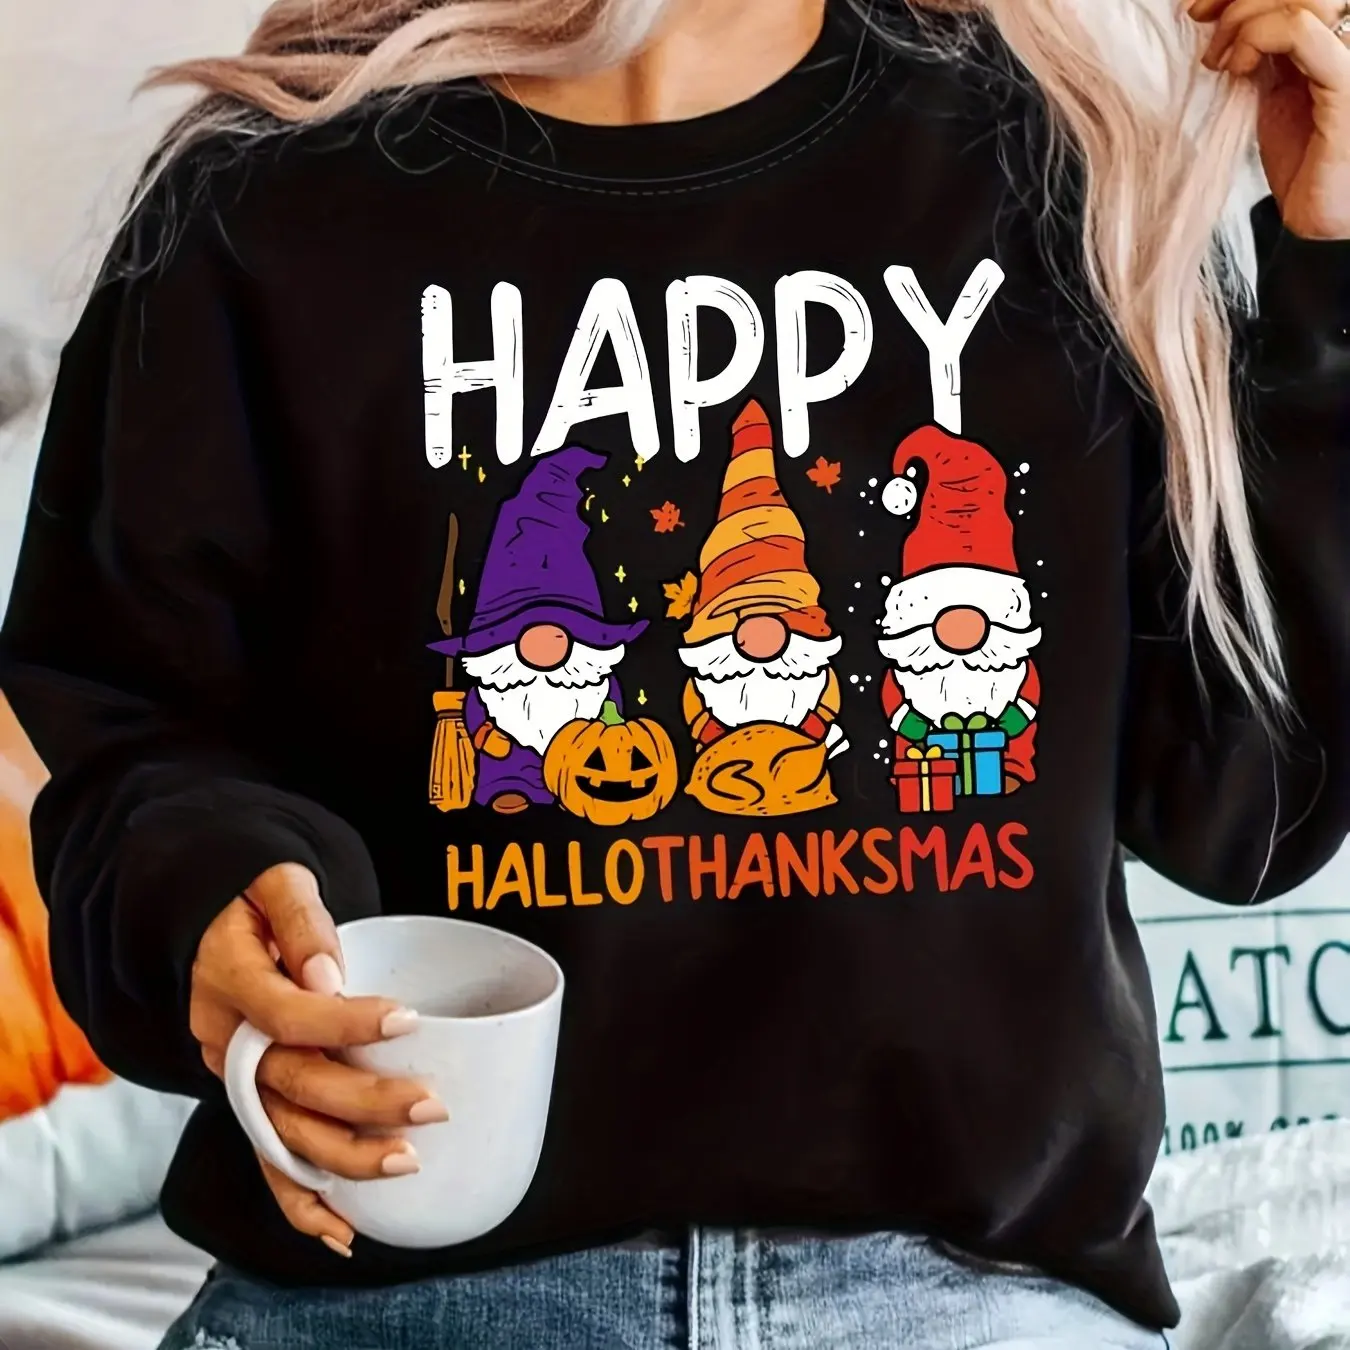 

Happy Hallothanksmas Print Sweatshirt Casual Long Sleeve Crew Neck Sweatshirt Women's Clothing